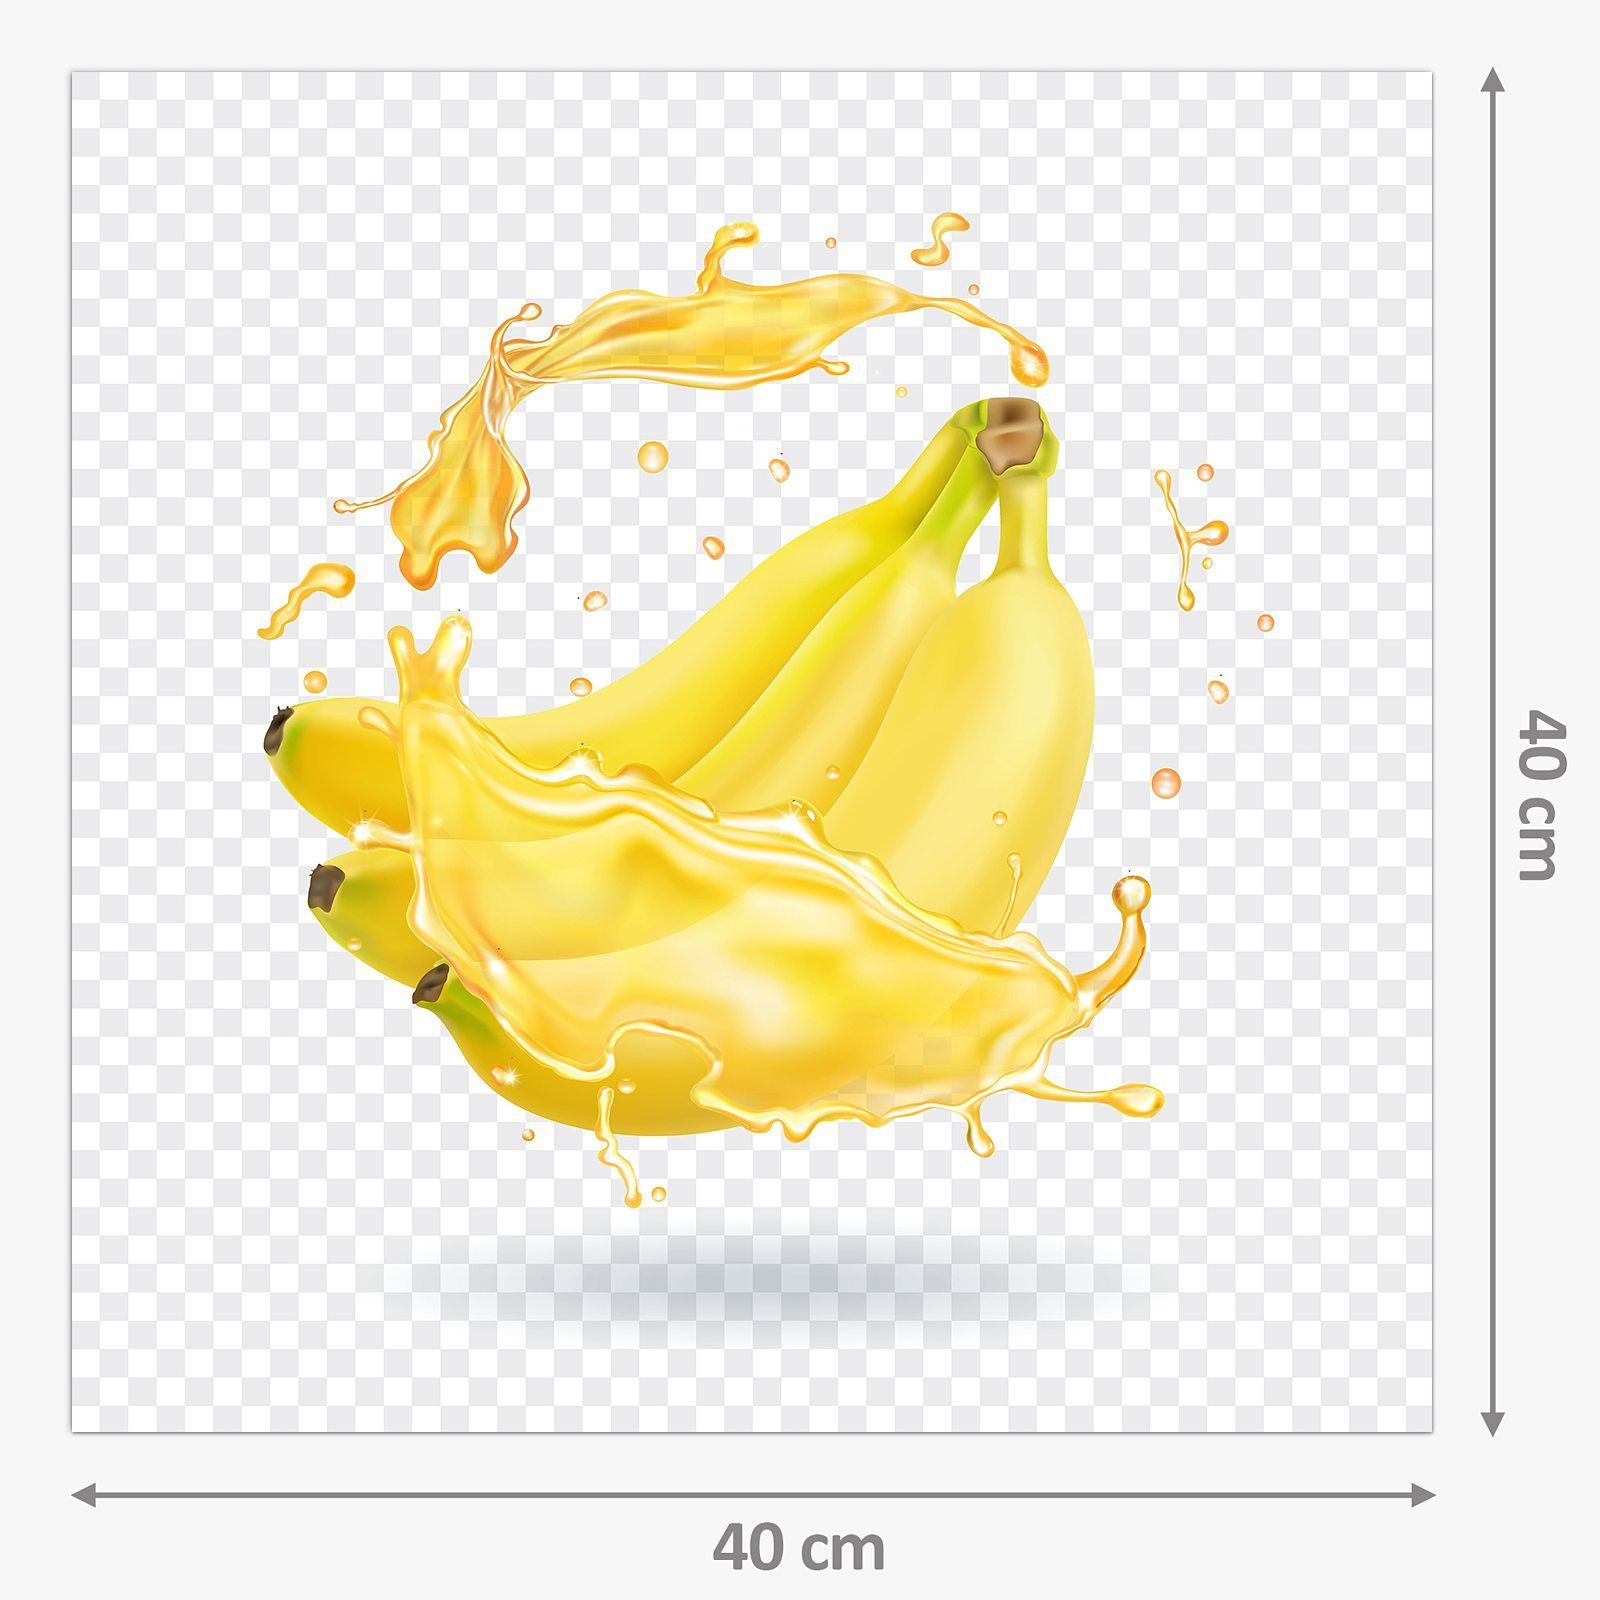 Küchenrückwand Motiv Primedeco Bananensplash mit Küchenrückwand Spritzschutz Glas